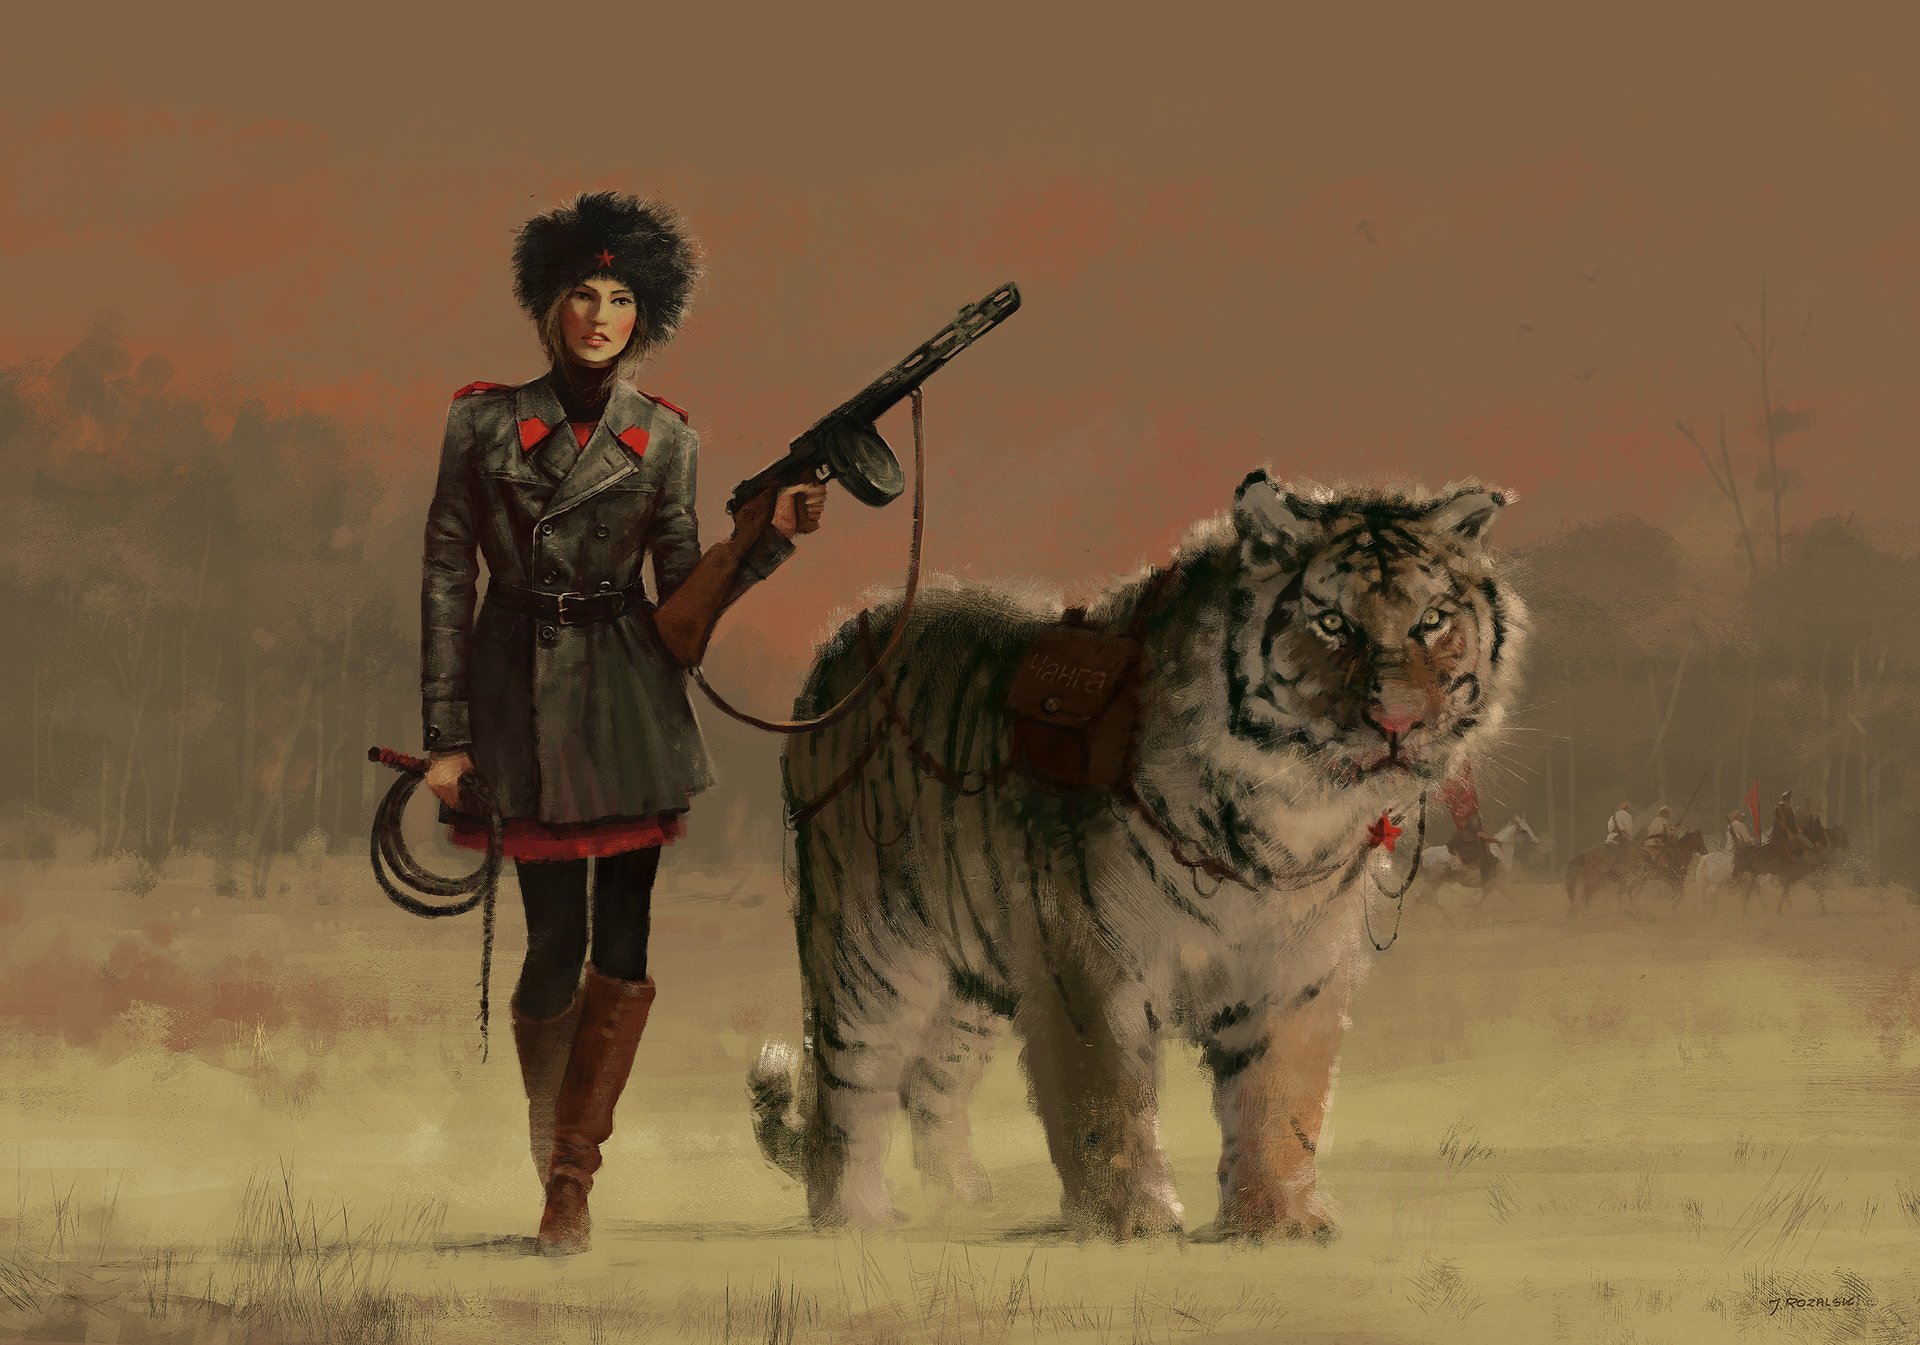 Обои с тегом:живопись, арт, девушка, форма, оружие, животное, тигр.